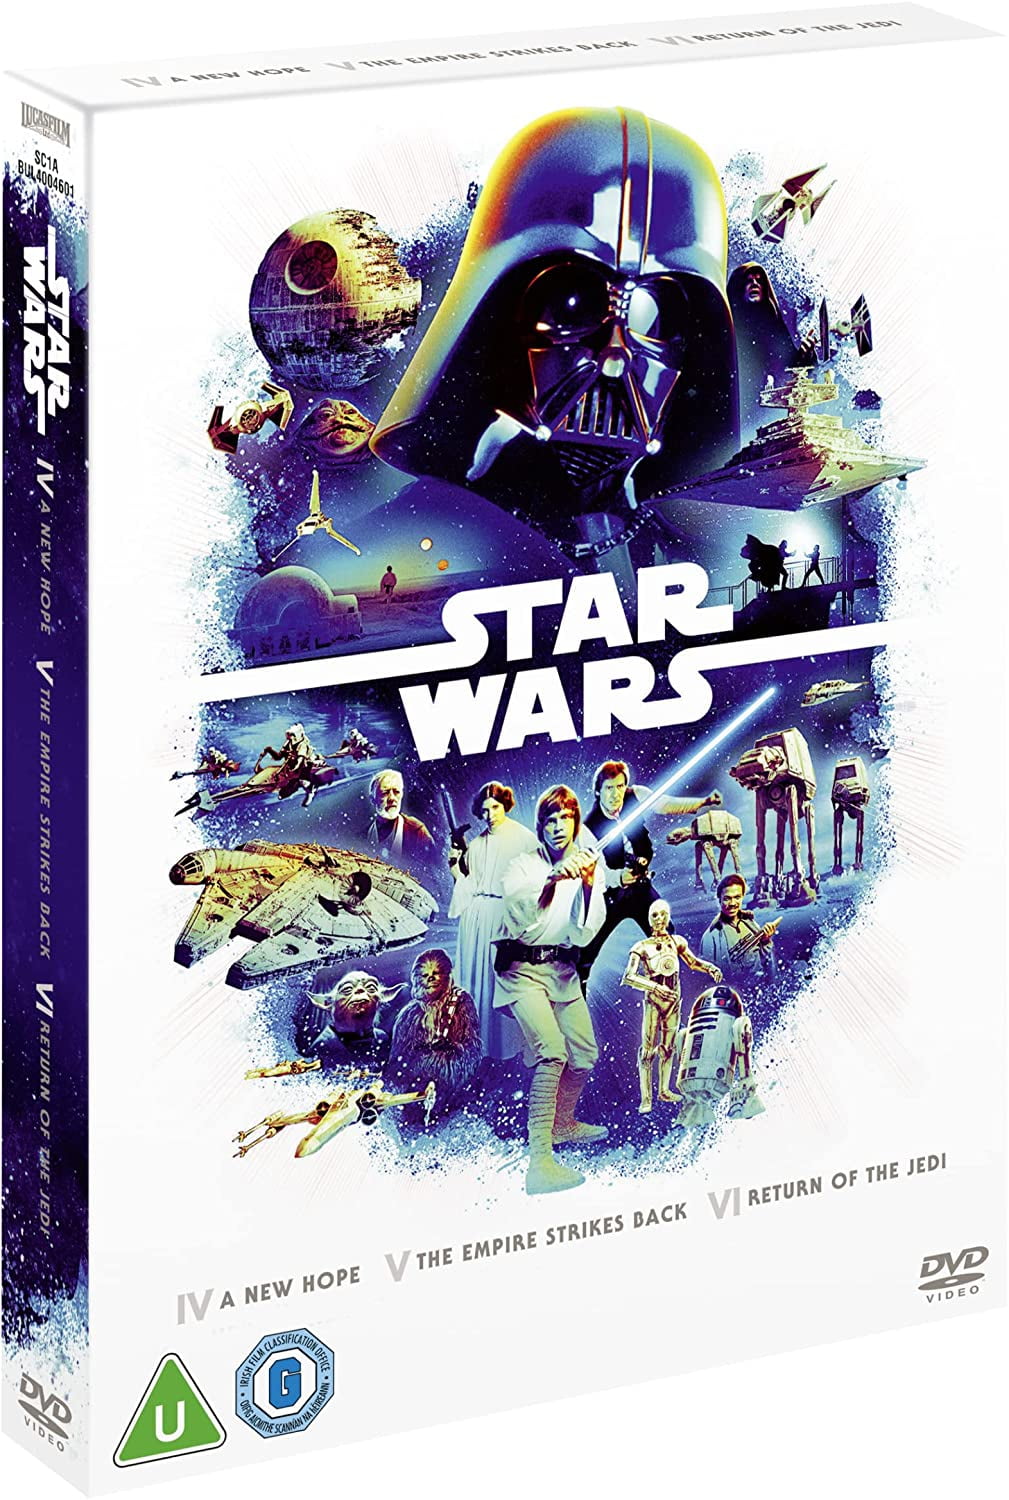 Star Wars Original Trilogy Box Set DVD (Episodes 4-6) [2022] Region Free -